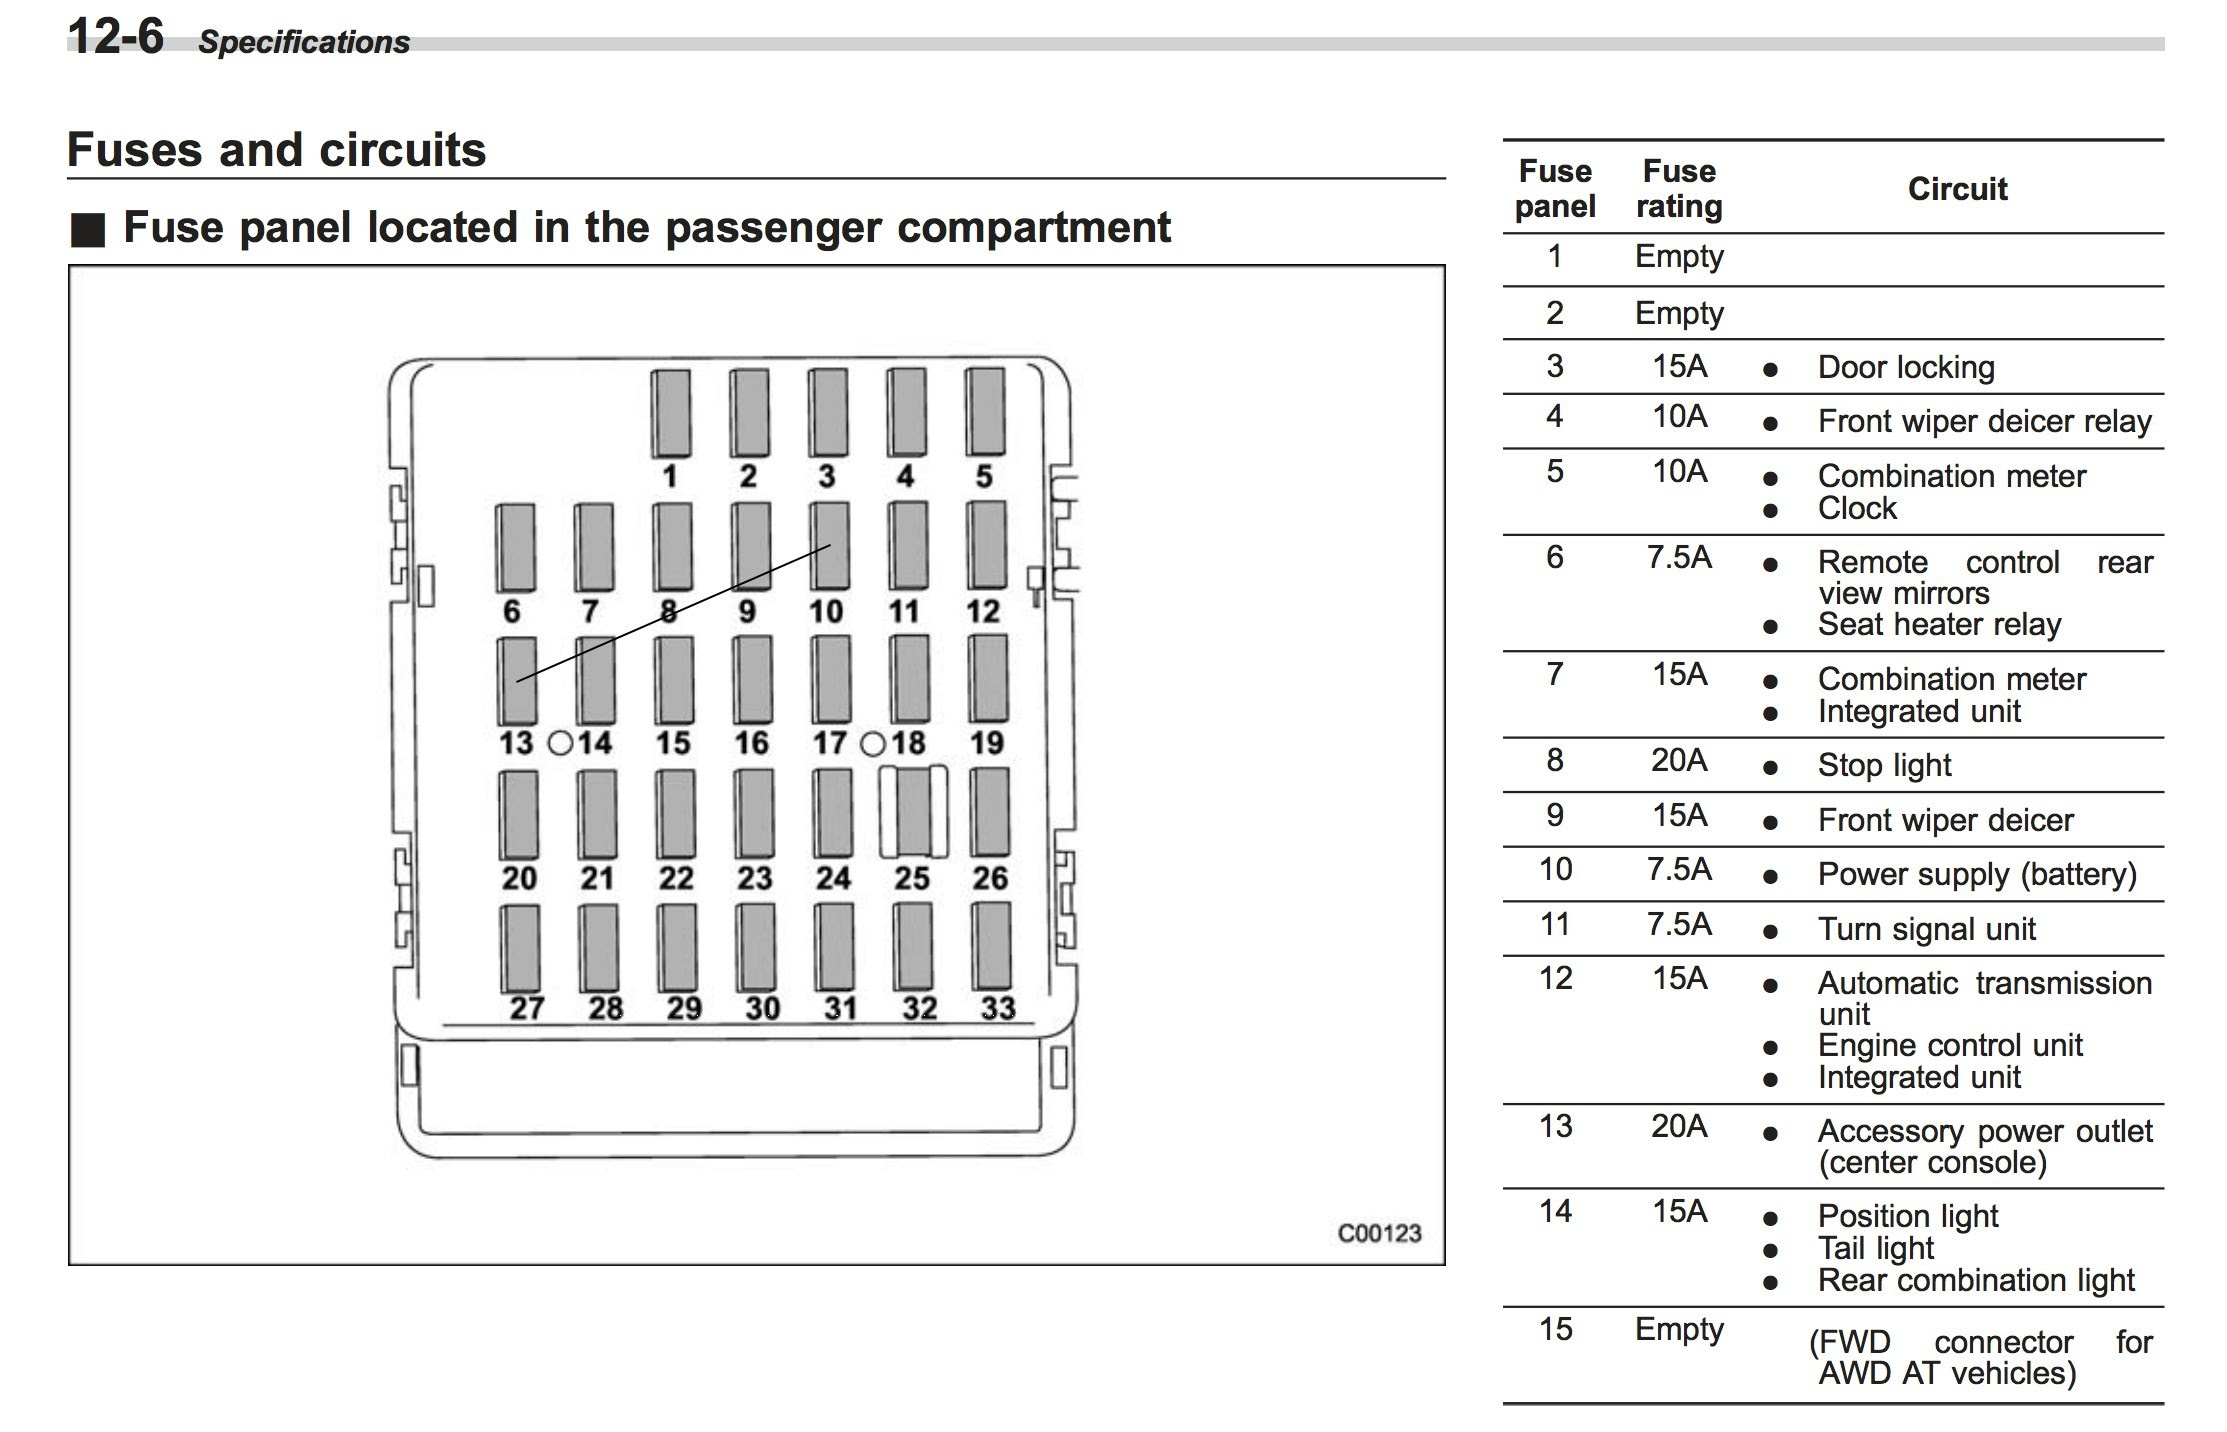 Subaru Fuse Panel - Complete Wiring Schemas